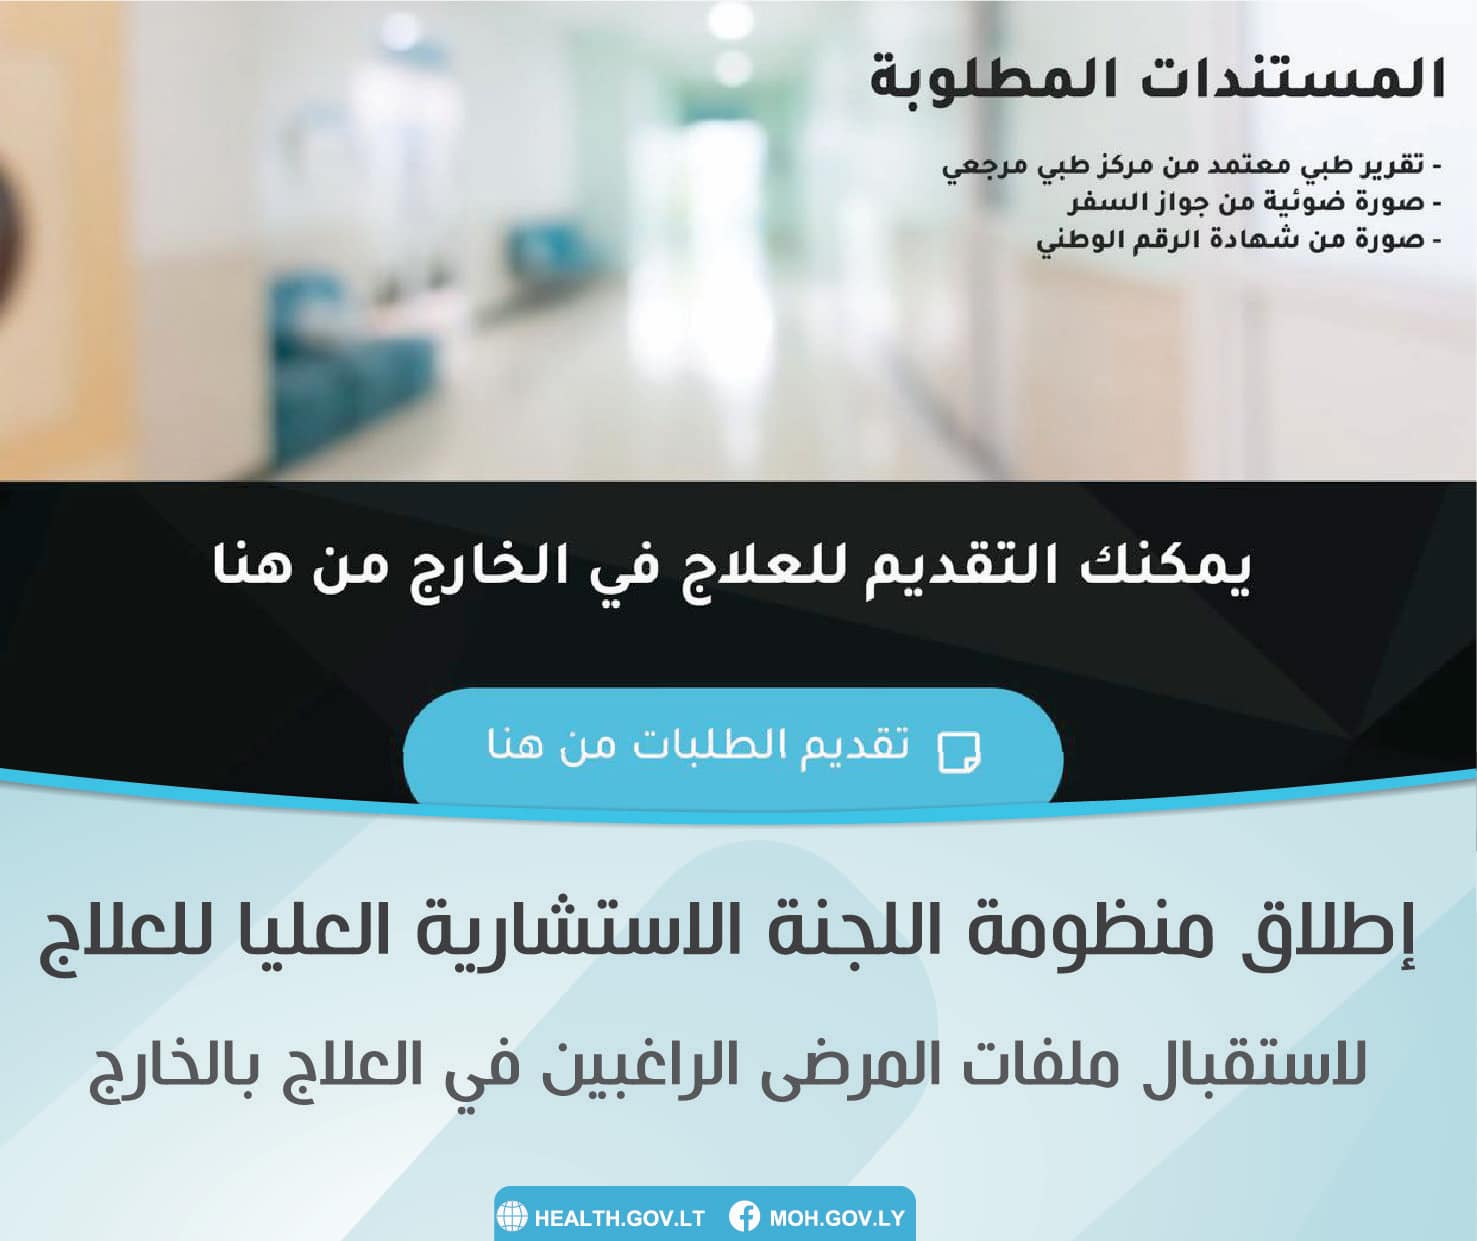 نعم هذا الخبر صحيح: وزارة الصحة تعلن إطلاق أول منظومة إلكترونية لتلقي طلبات العلاج بالخارج على شبكة الإنترنت